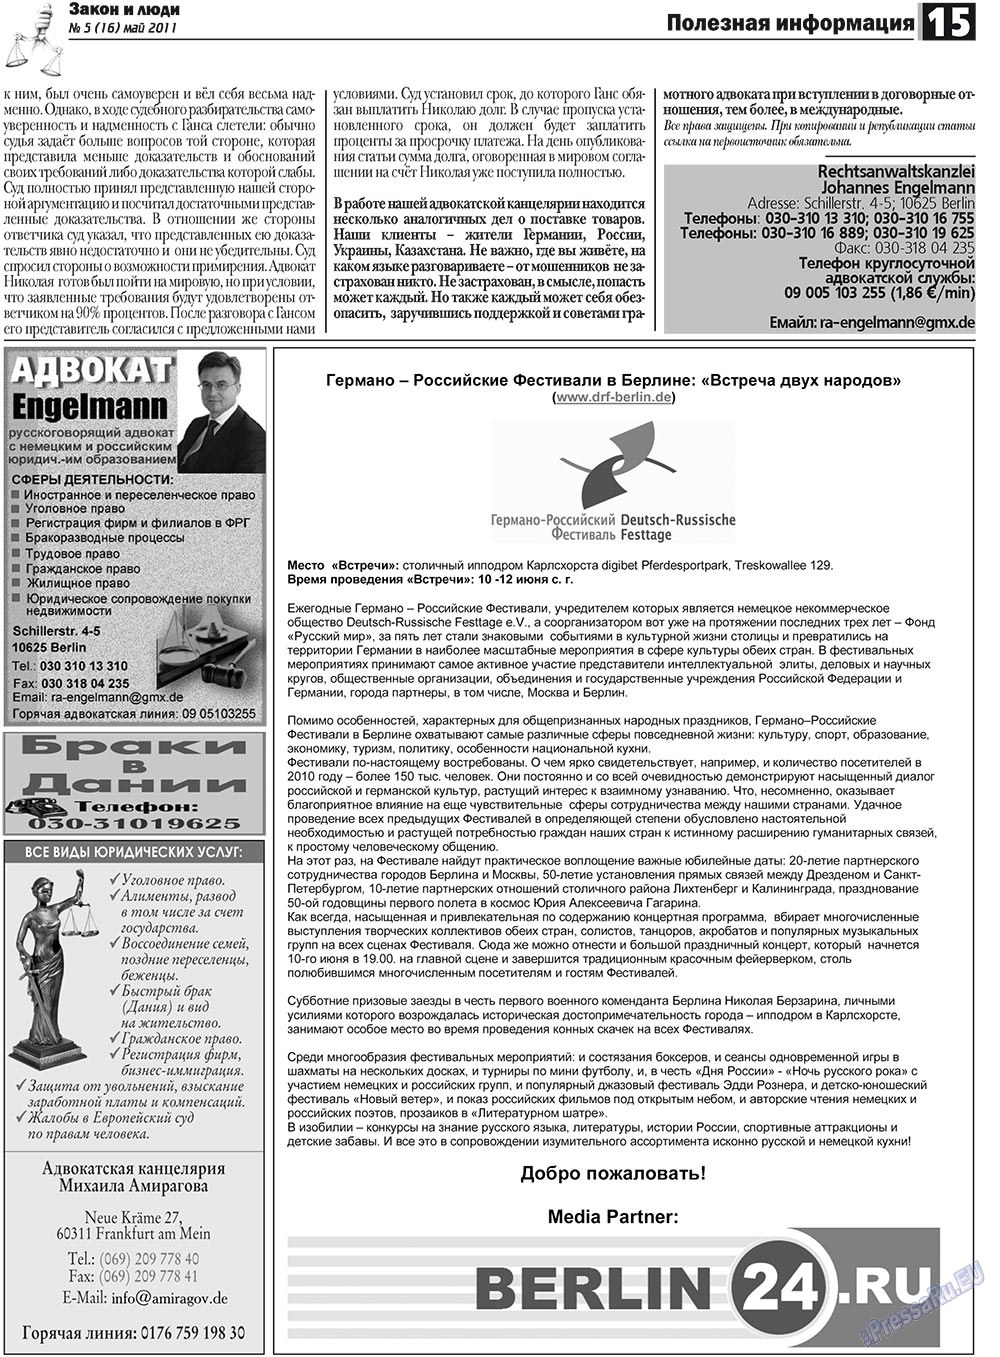 Закон и люди, газета. 2011 №5 стр.15